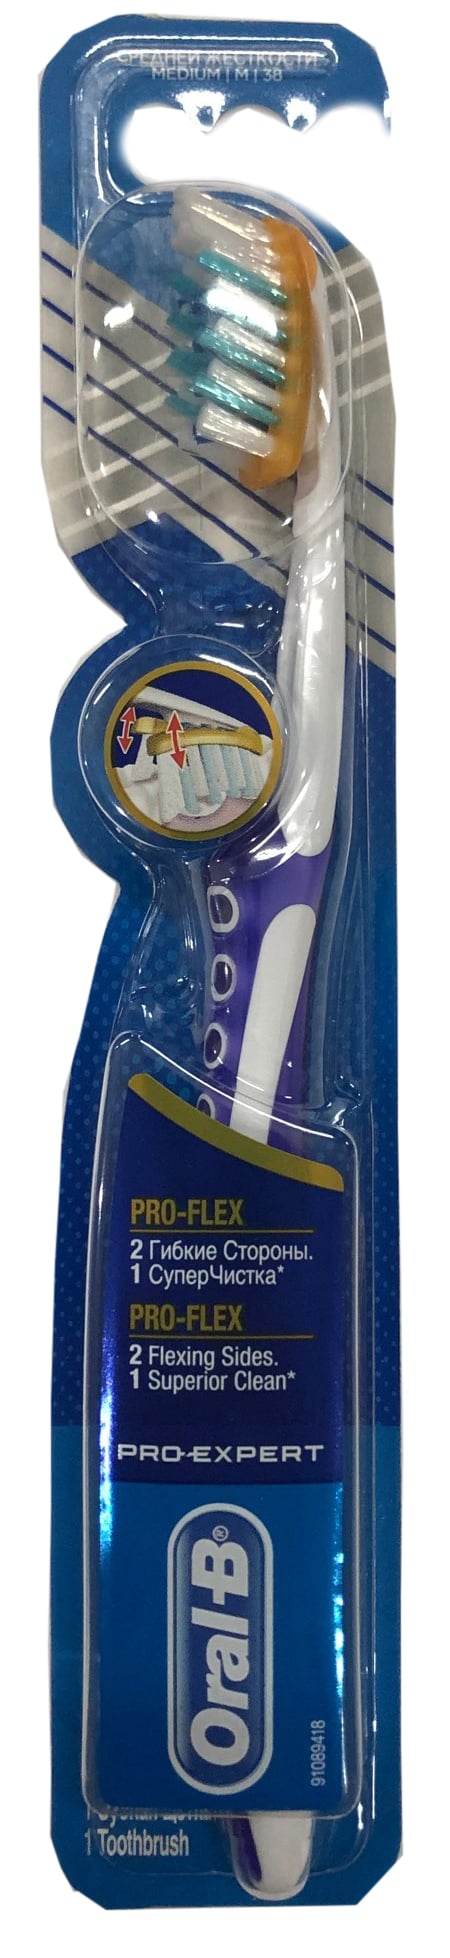 Зубная щетка Oral-B Pro-Expert Pro-Flex, средняя, фиолетовый - фото 1